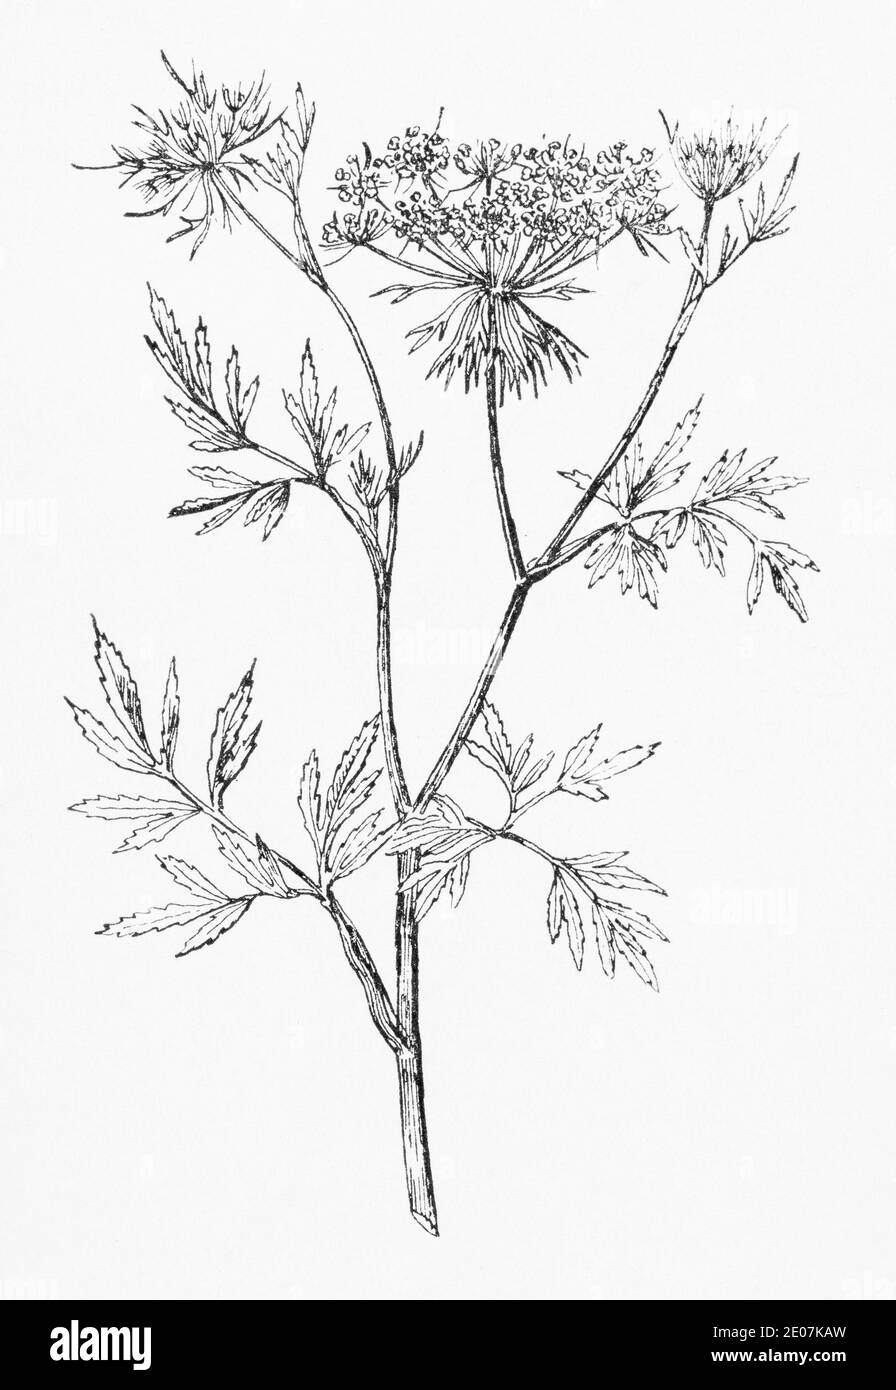 Alte botanische Illustration Gravur von Great Ammi, große Bullwort / Ammi majus. Zeichnungen von britischen Umbelliferen. Traditionelle Kräuterpflanze. Siehe Hinweise Stockfoto